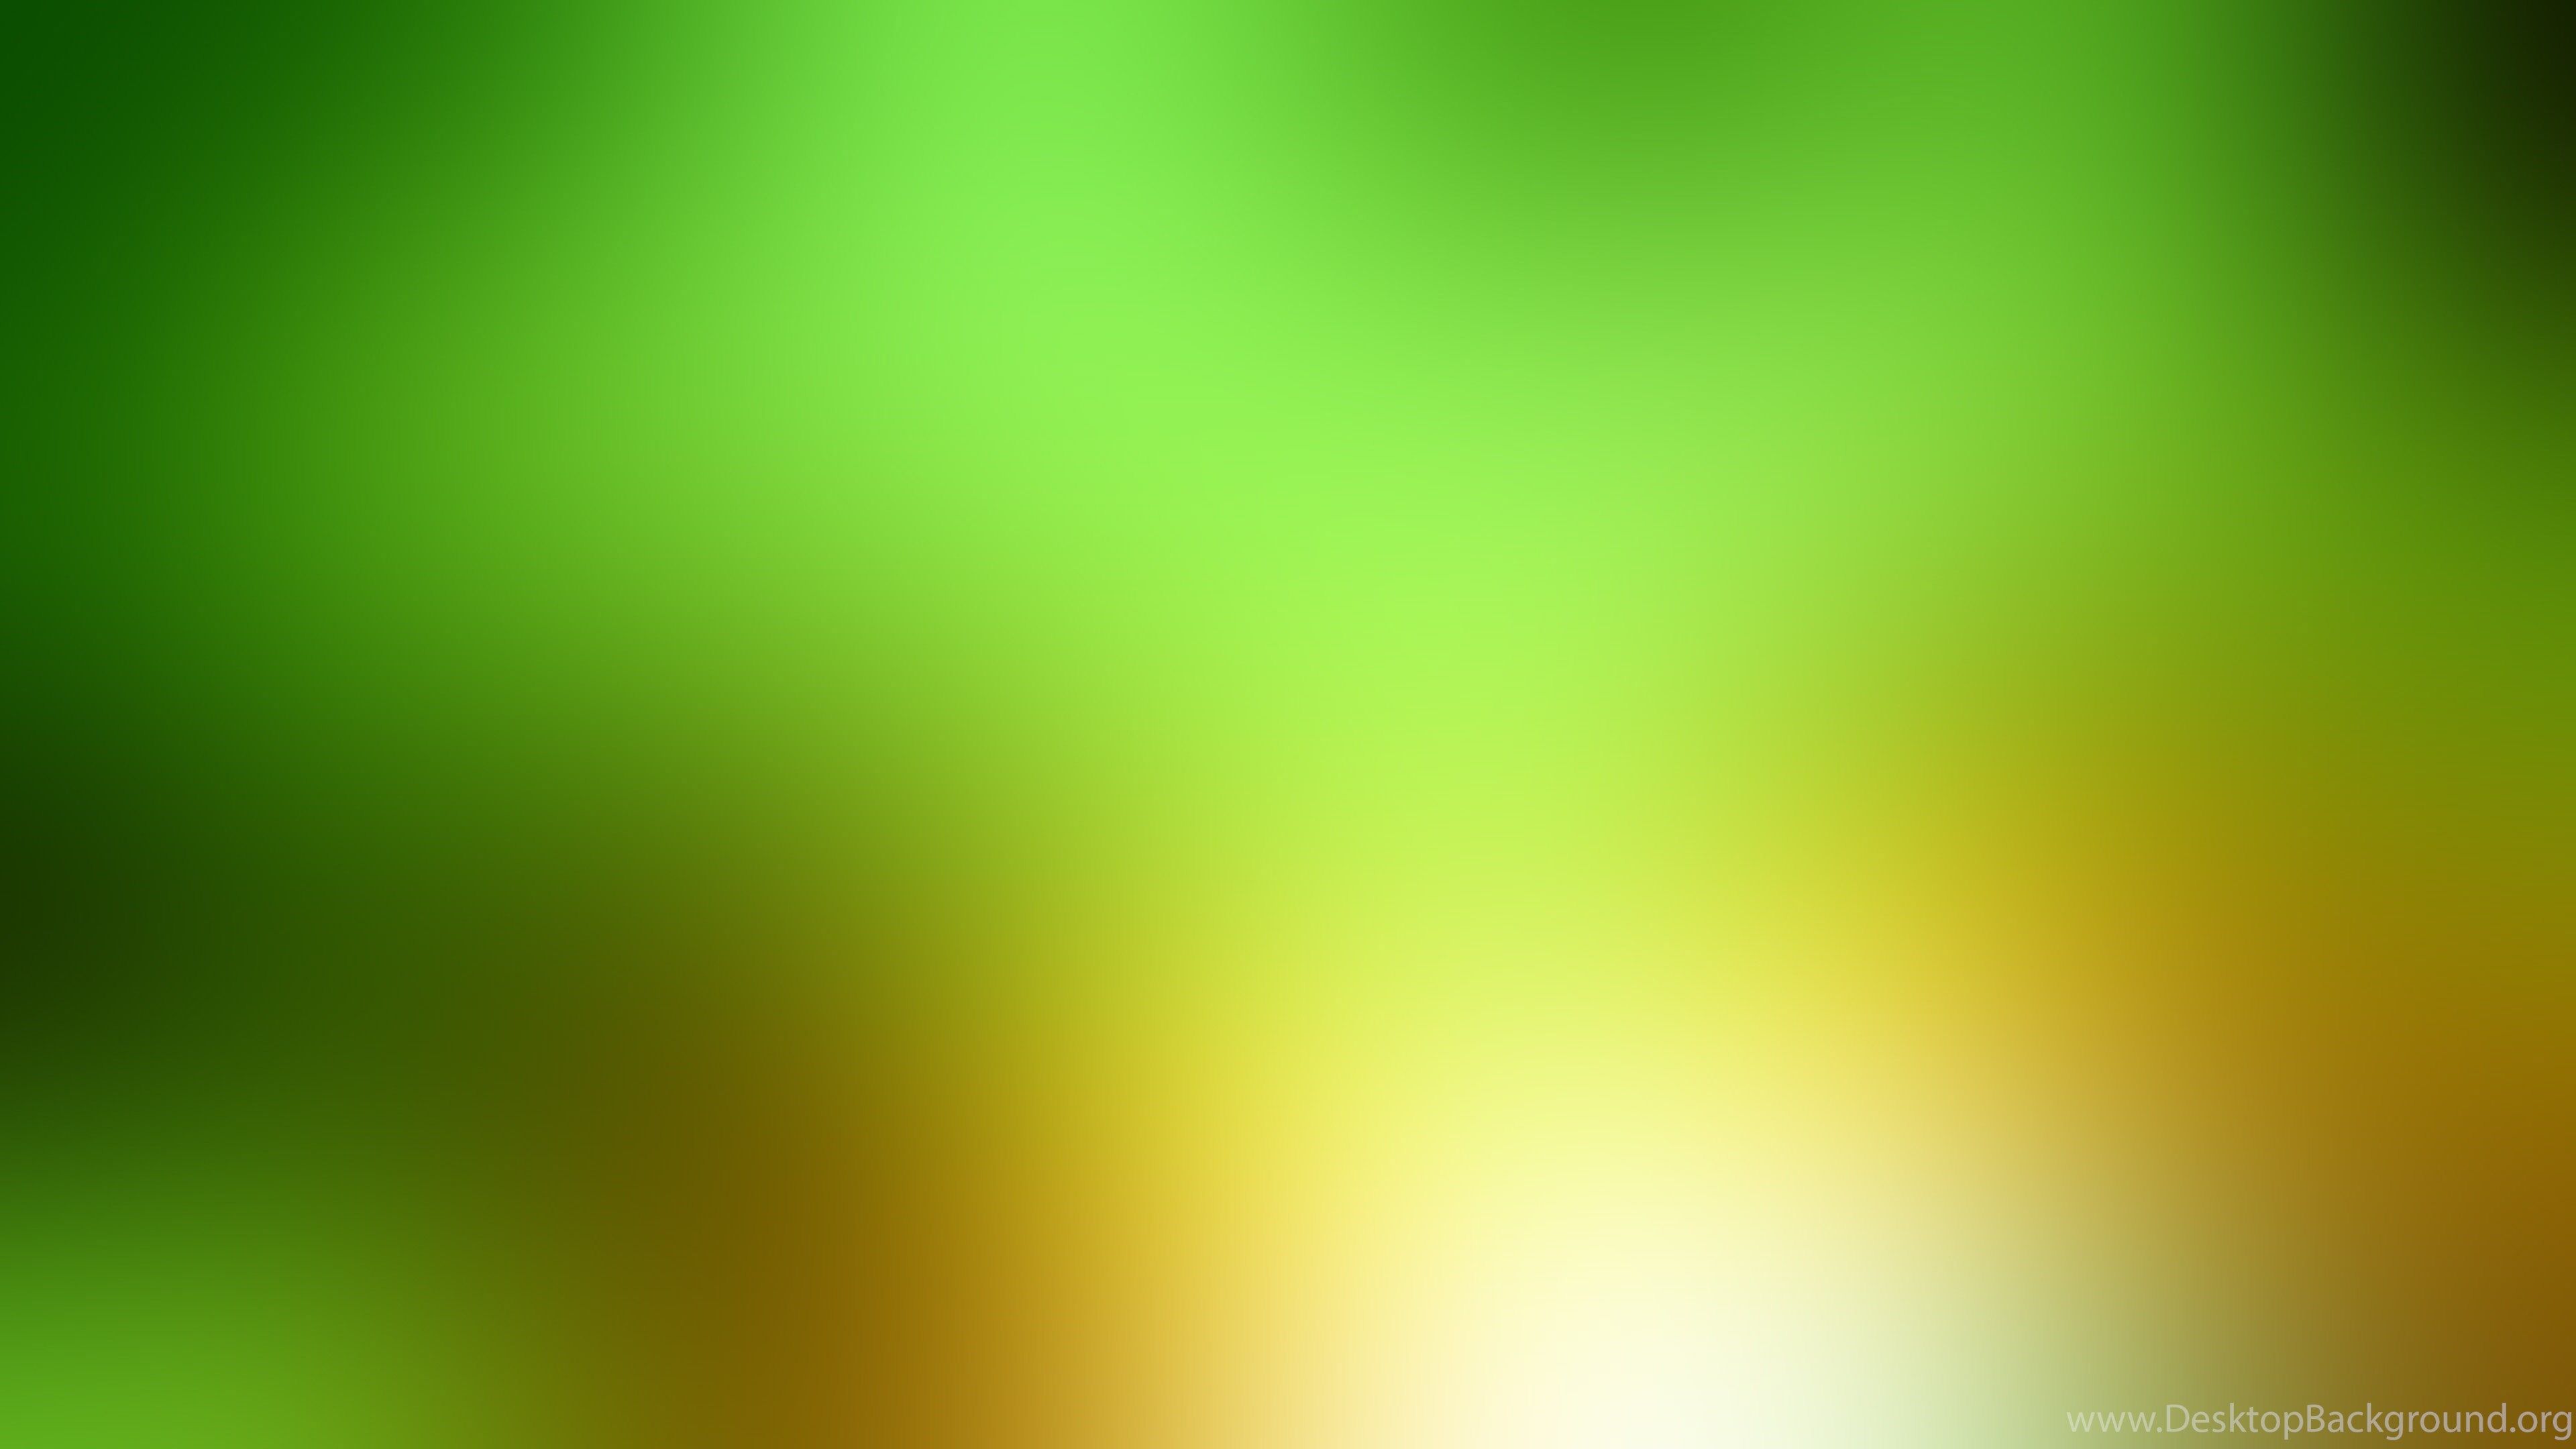 Download Wallpaper 3840x2160 Green, Yellow, White, Spot 4K Ultra